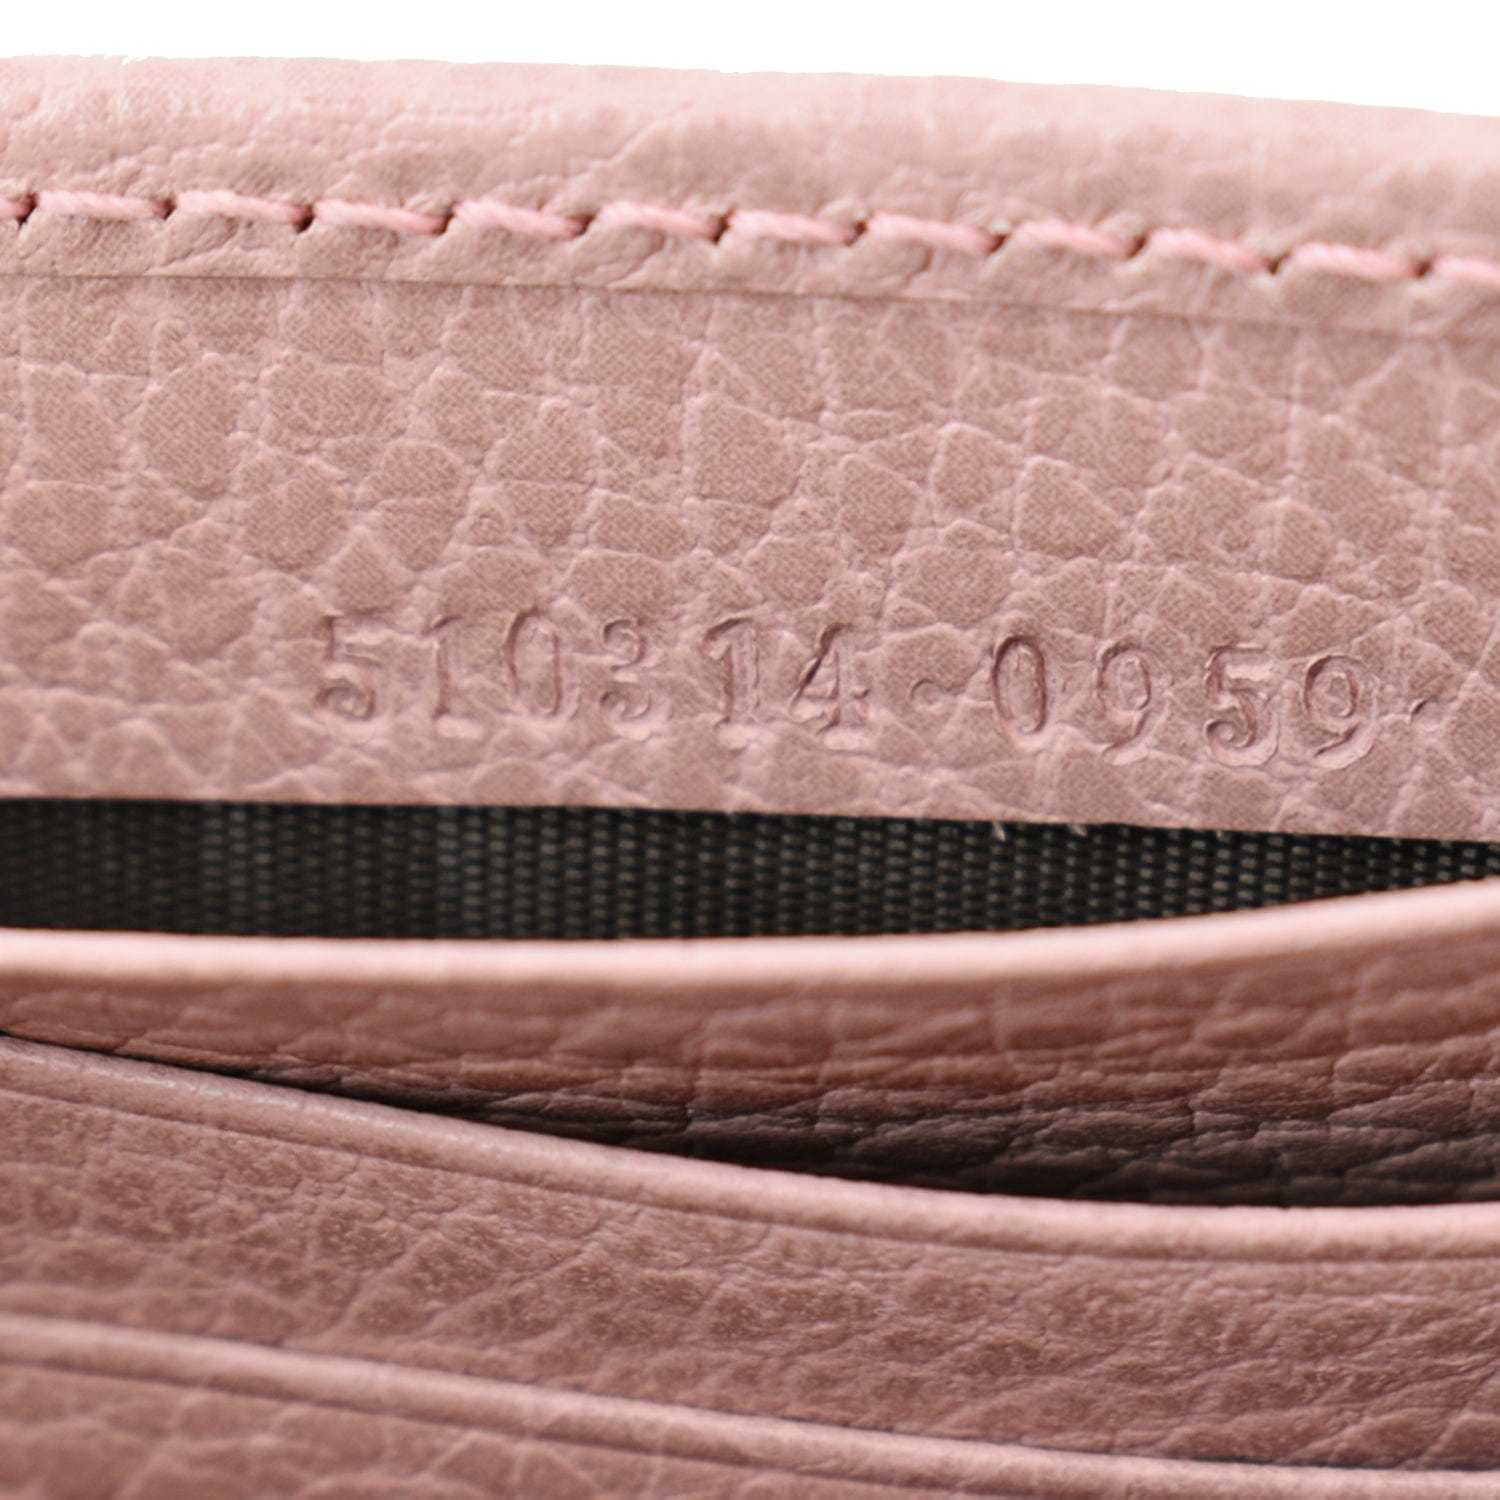 NEW GUCCI Dollar Calfskin Interlocking GG LARGE Leather Shoulder Bag Soft  Pink